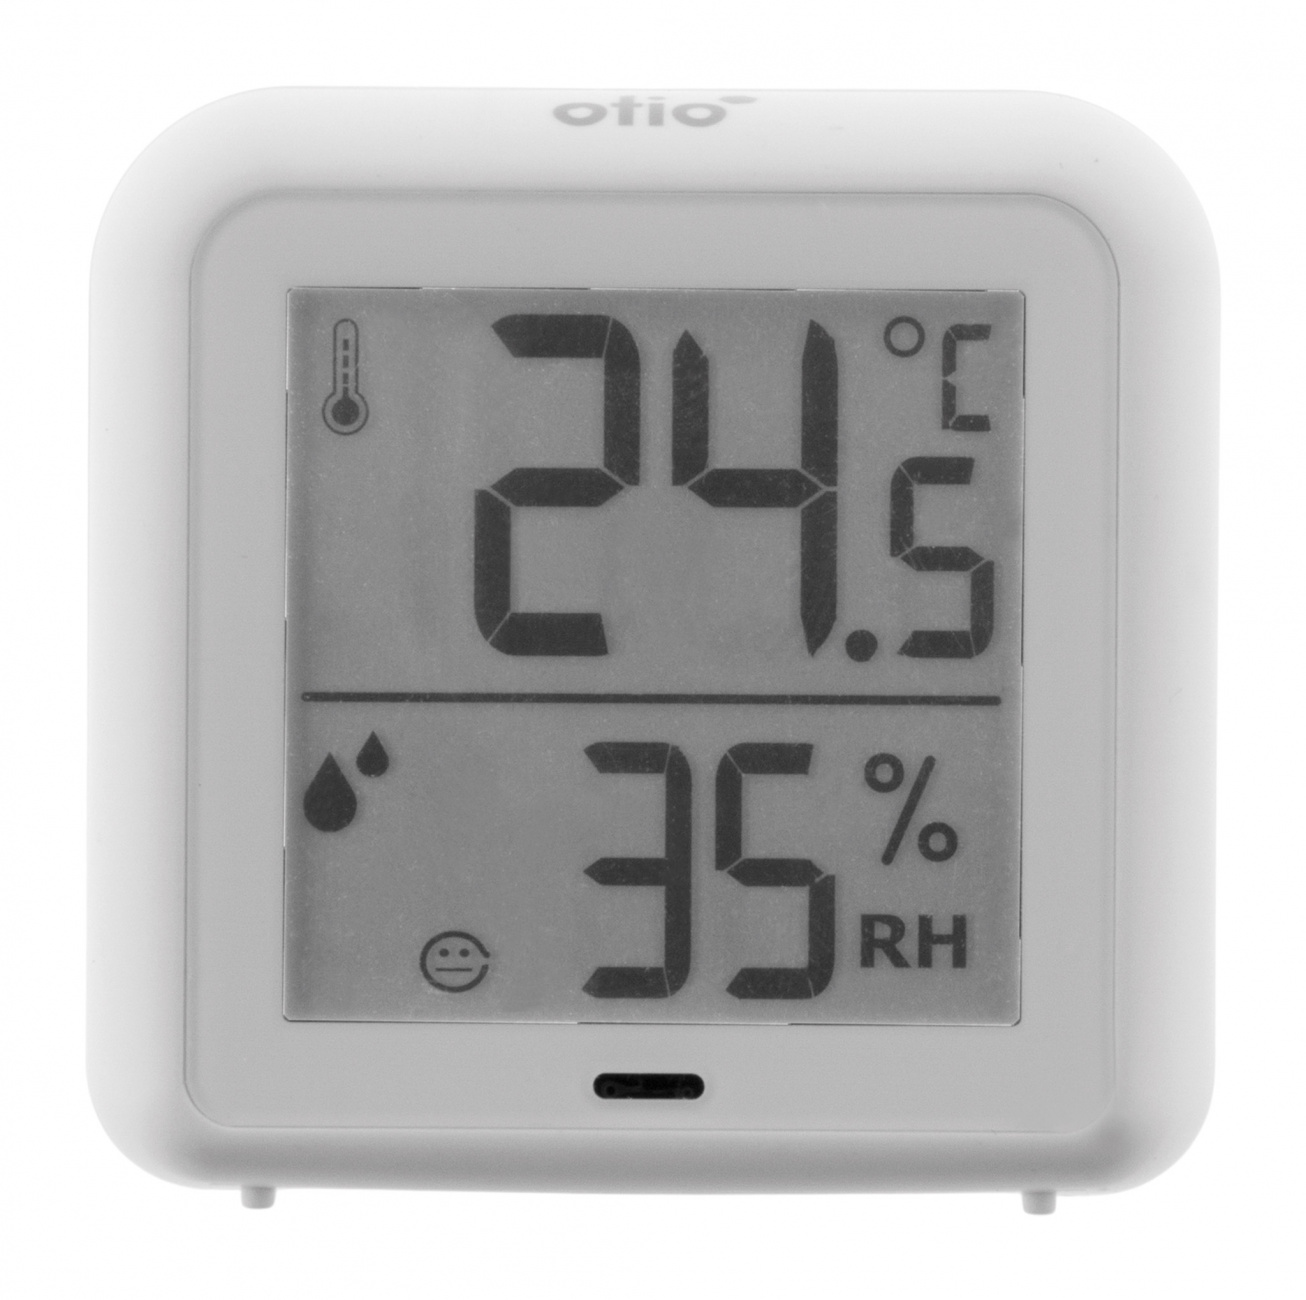 Thermomètre hygromètre connecté - Otio